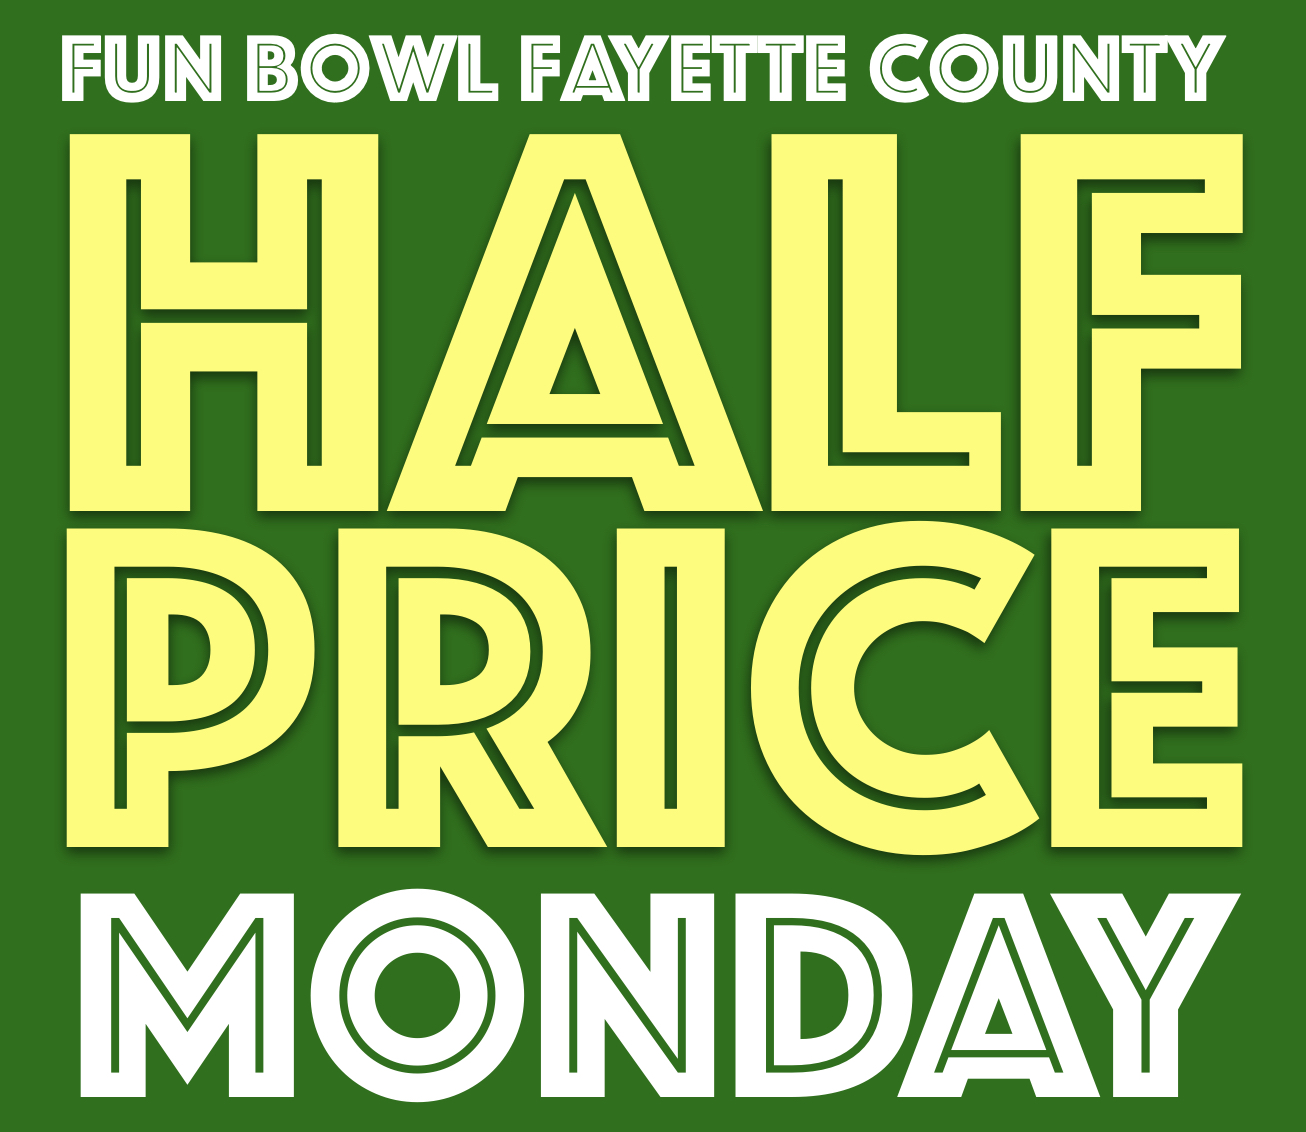 Fun Bowl Fayette County Half Price Mondays